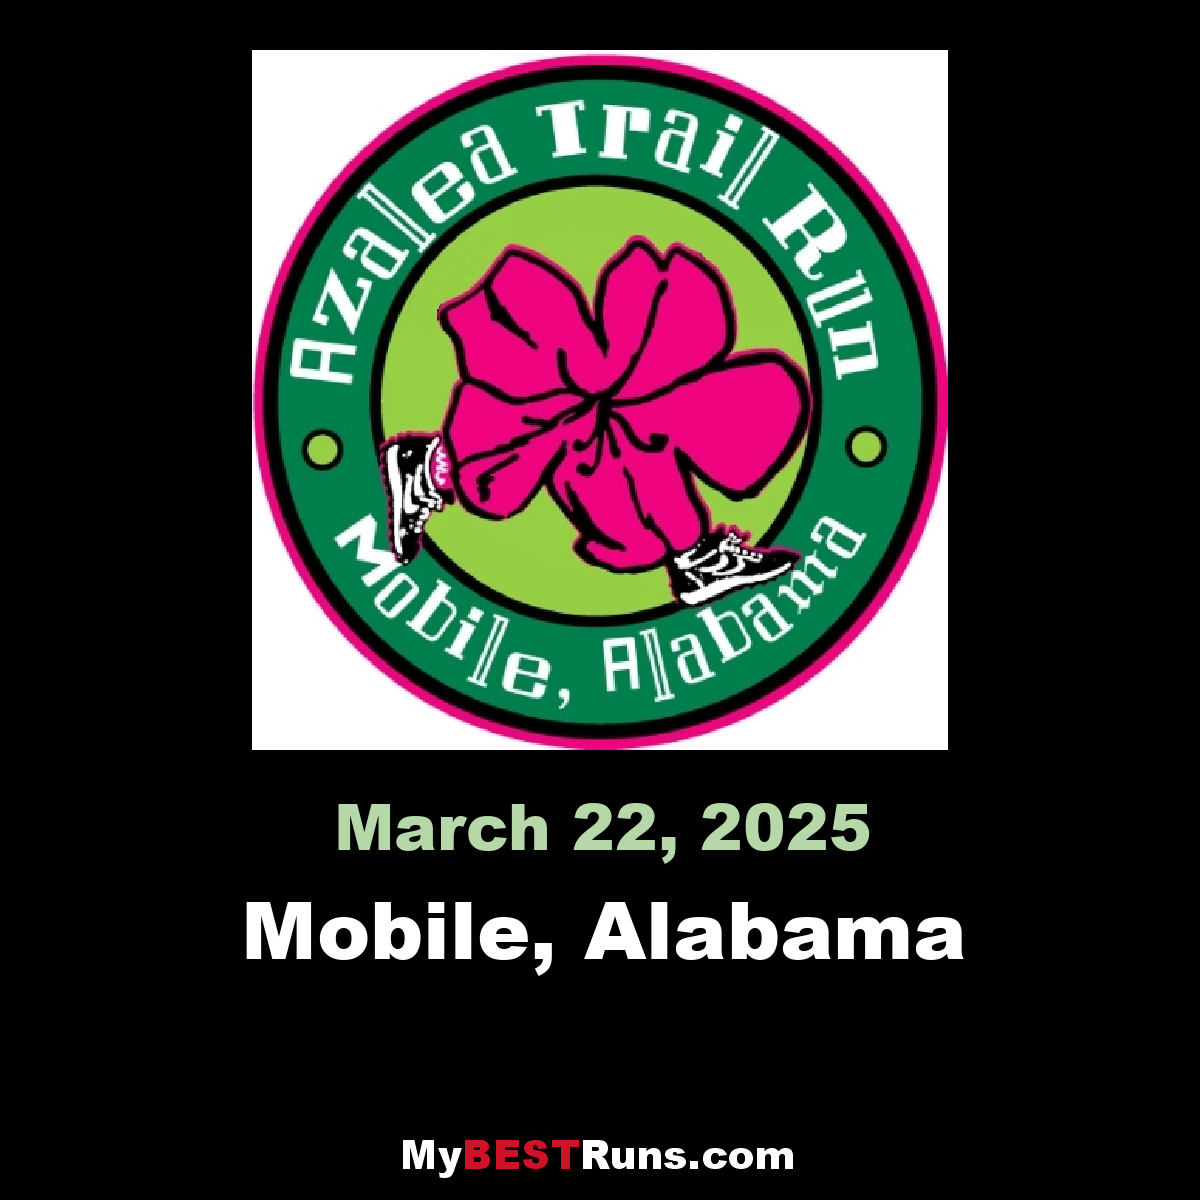 Azalea Trail Run Mobile, Alabama 3/28/2020 My BEST Runs Worlds